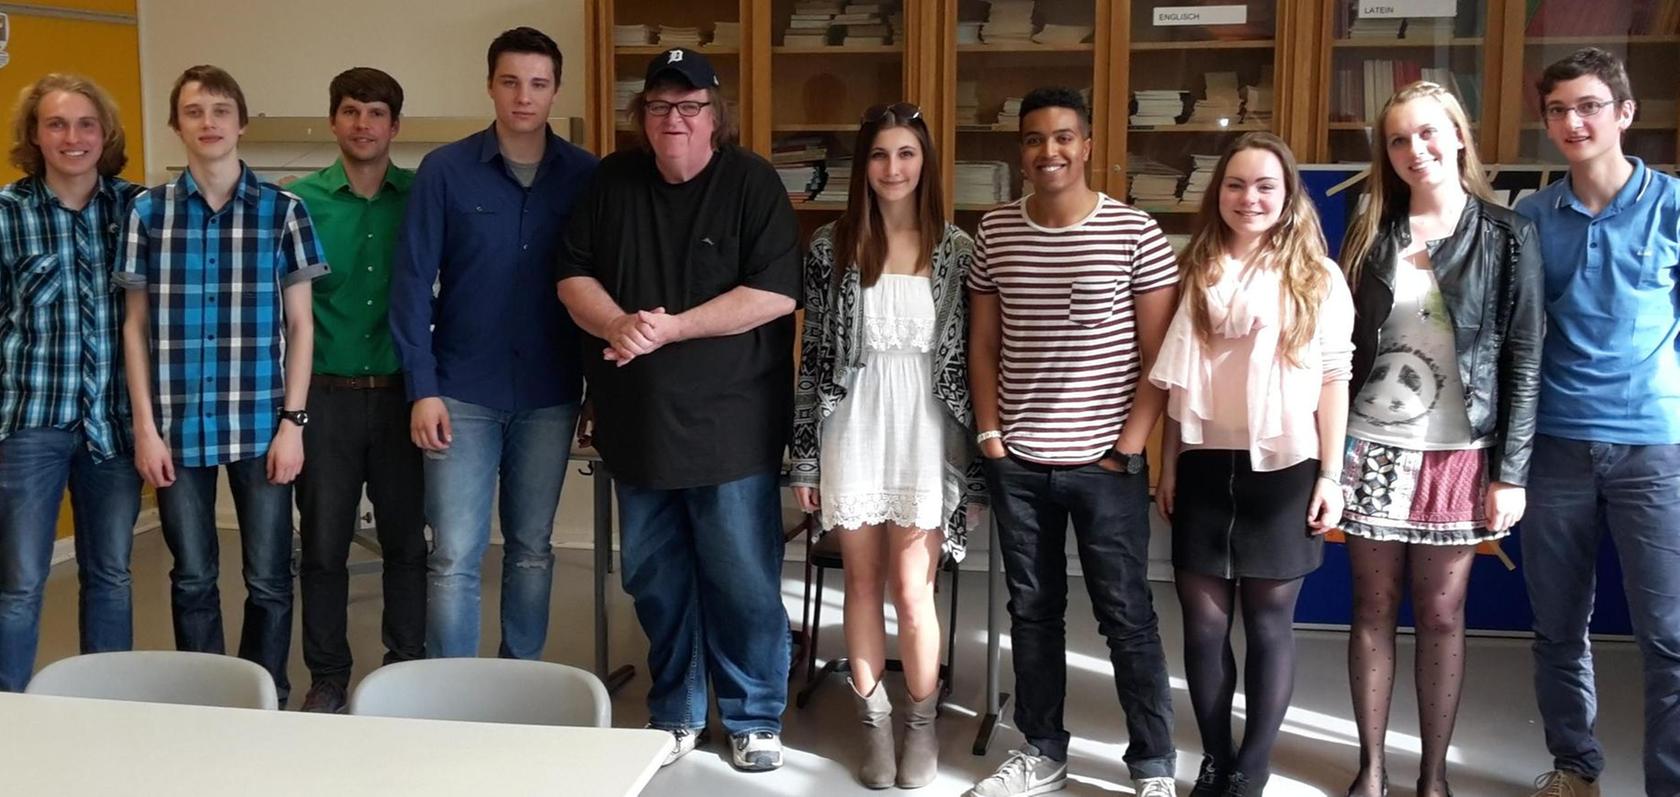 Kultregisseur Michael Moore drehte mit Schülern in Nürnberg